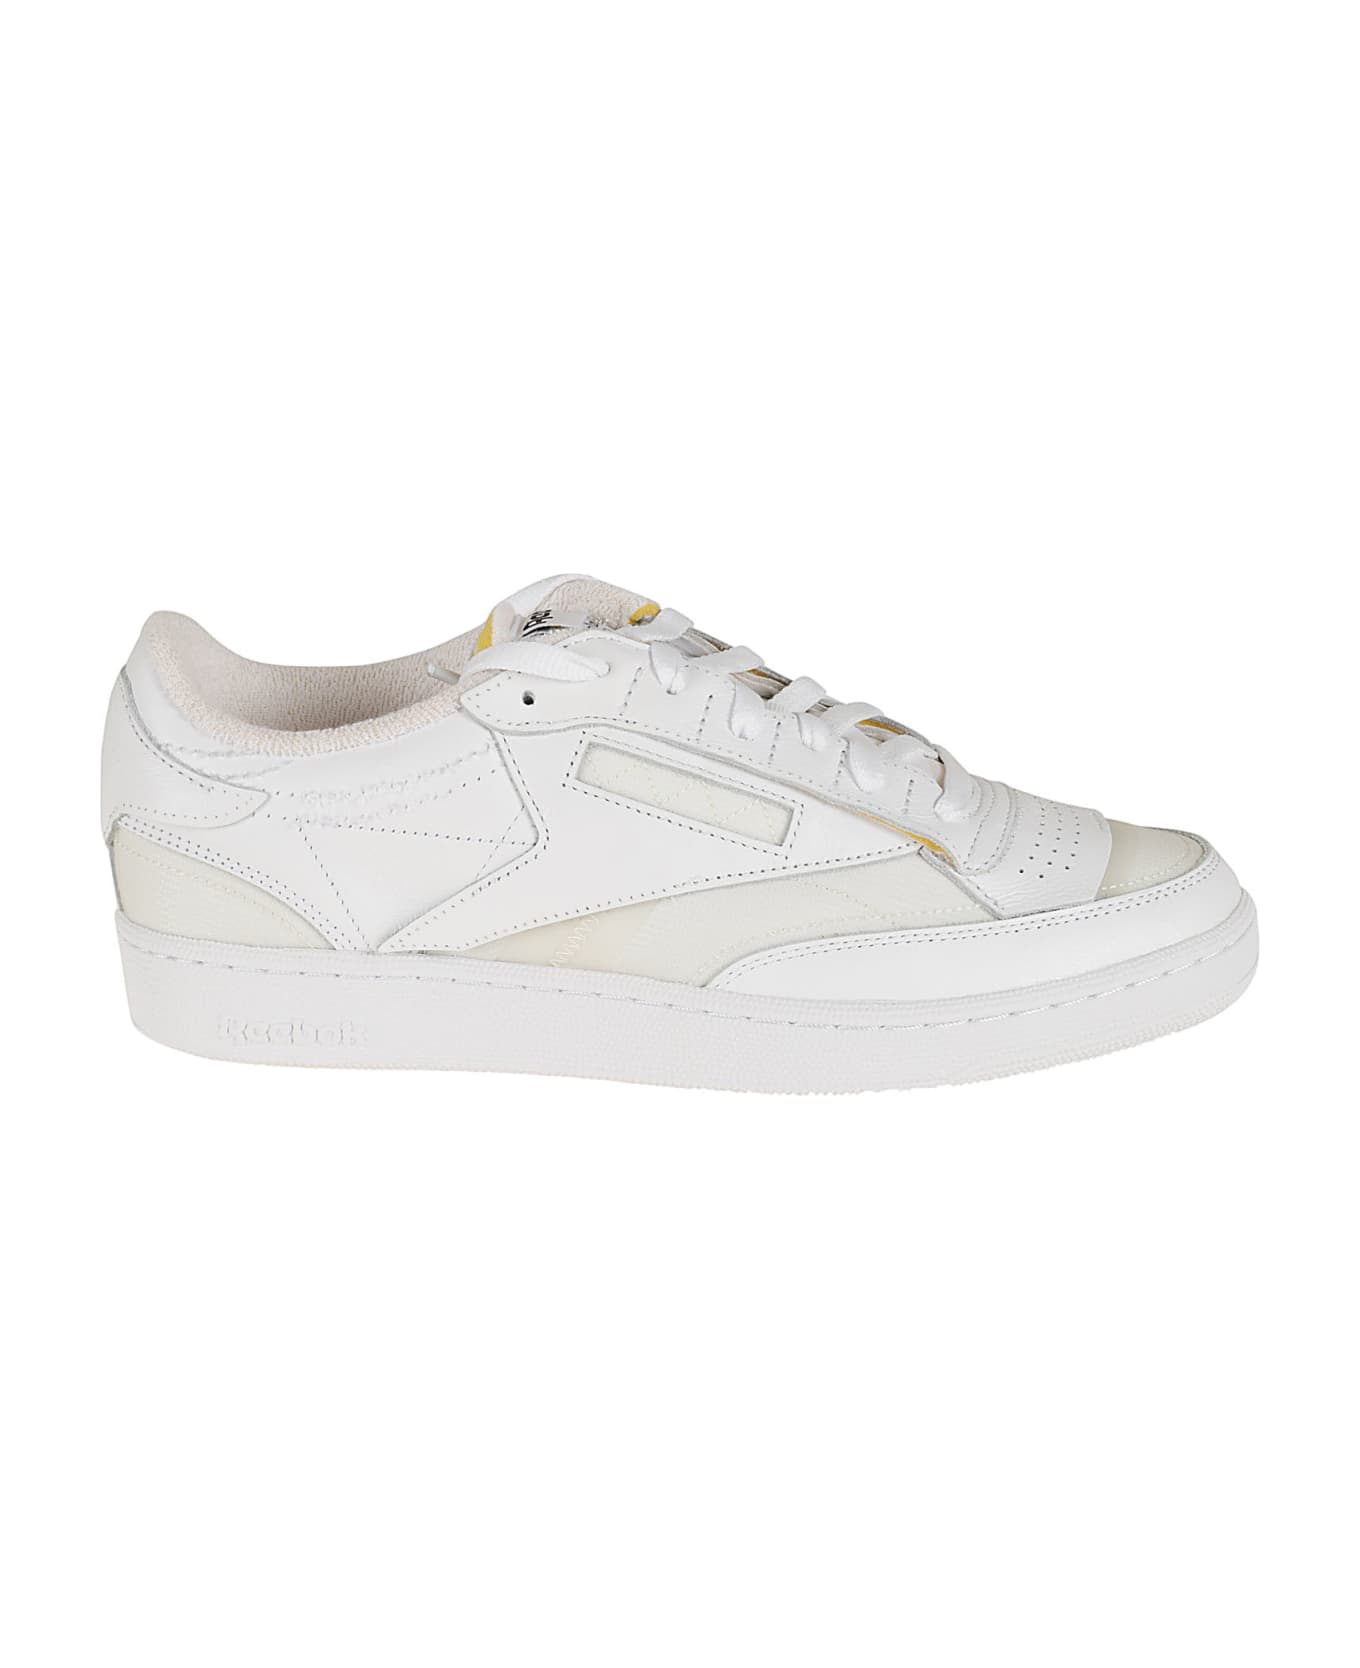 Maison Margiela Tennis Sneakers - White